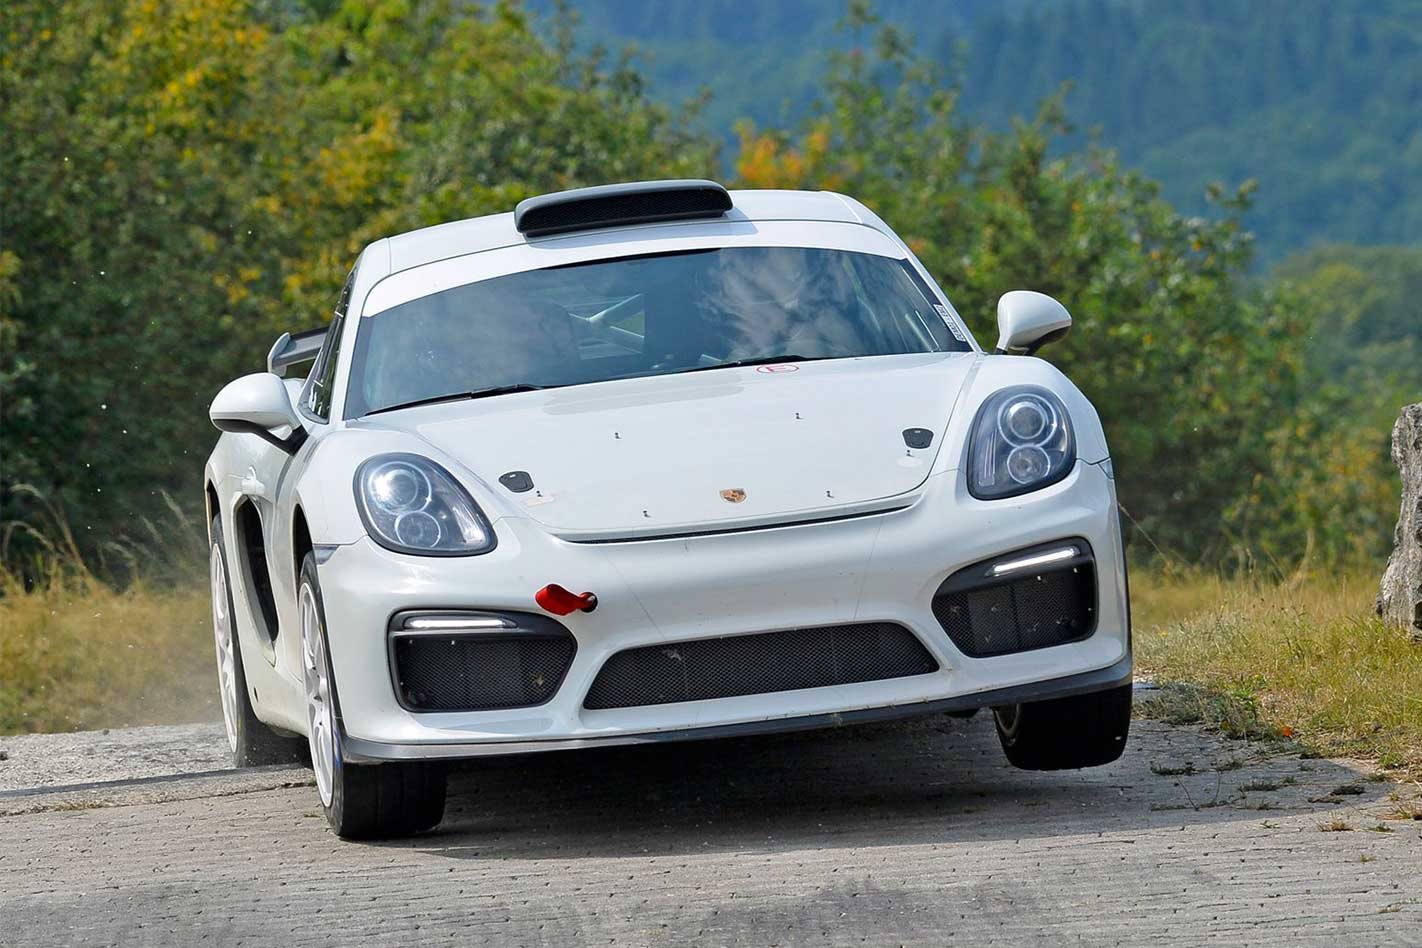 Porsche-Cayman-GT4-Clubsport-rally-car-concept-5.jpg